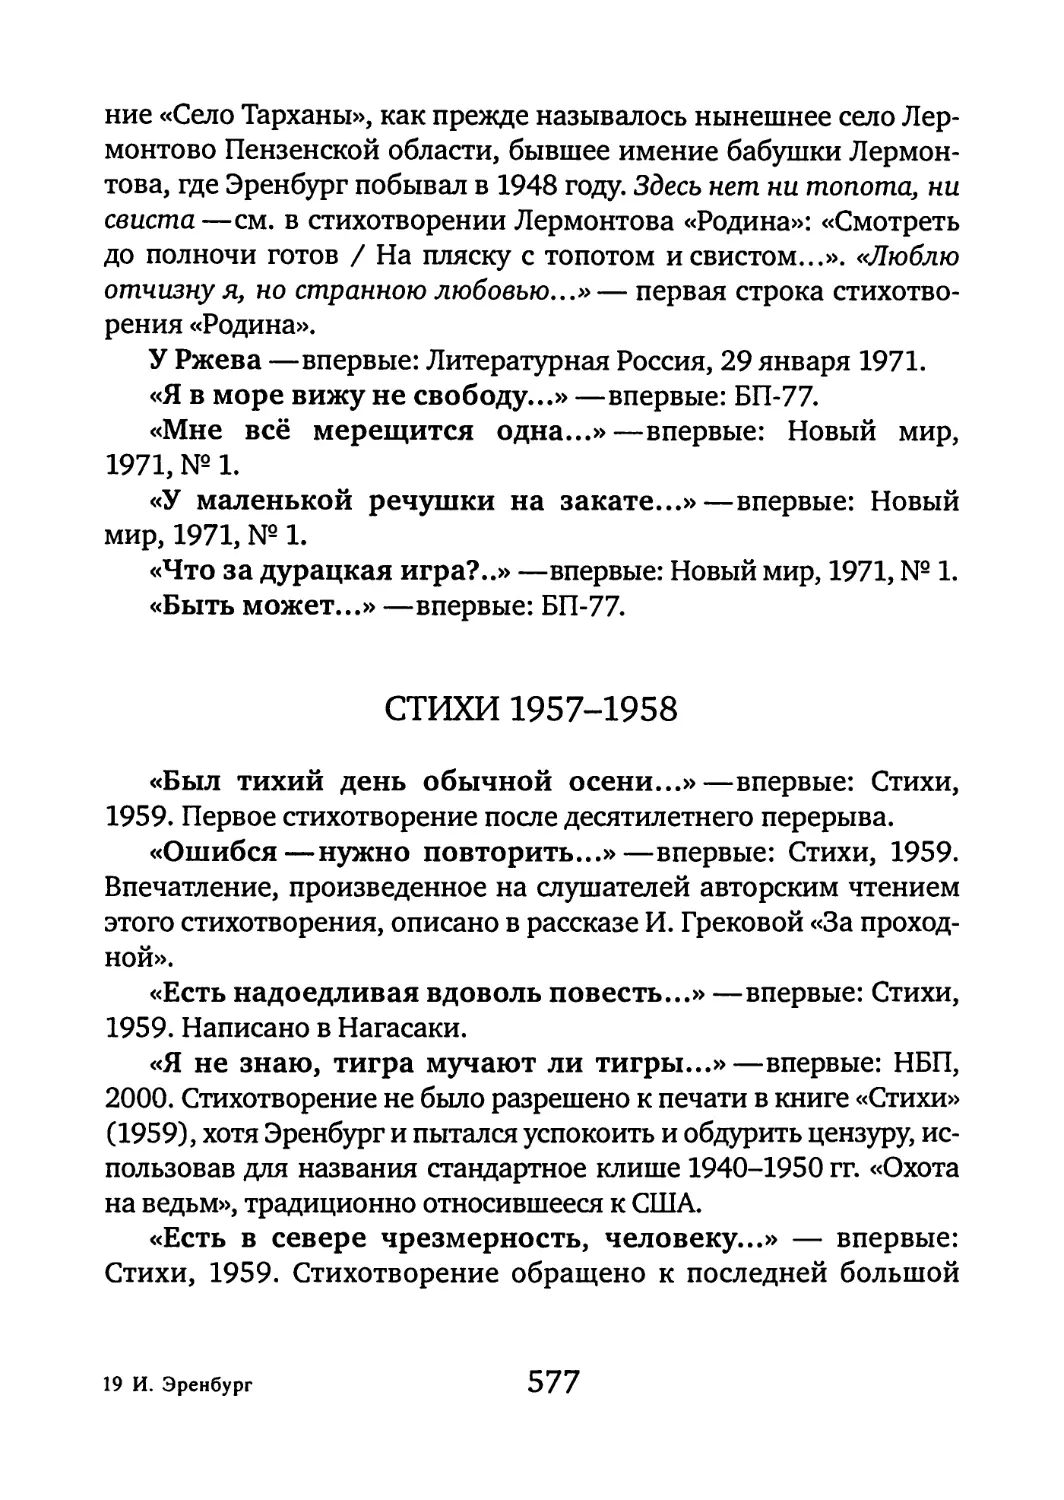 Стихи 1957-1958